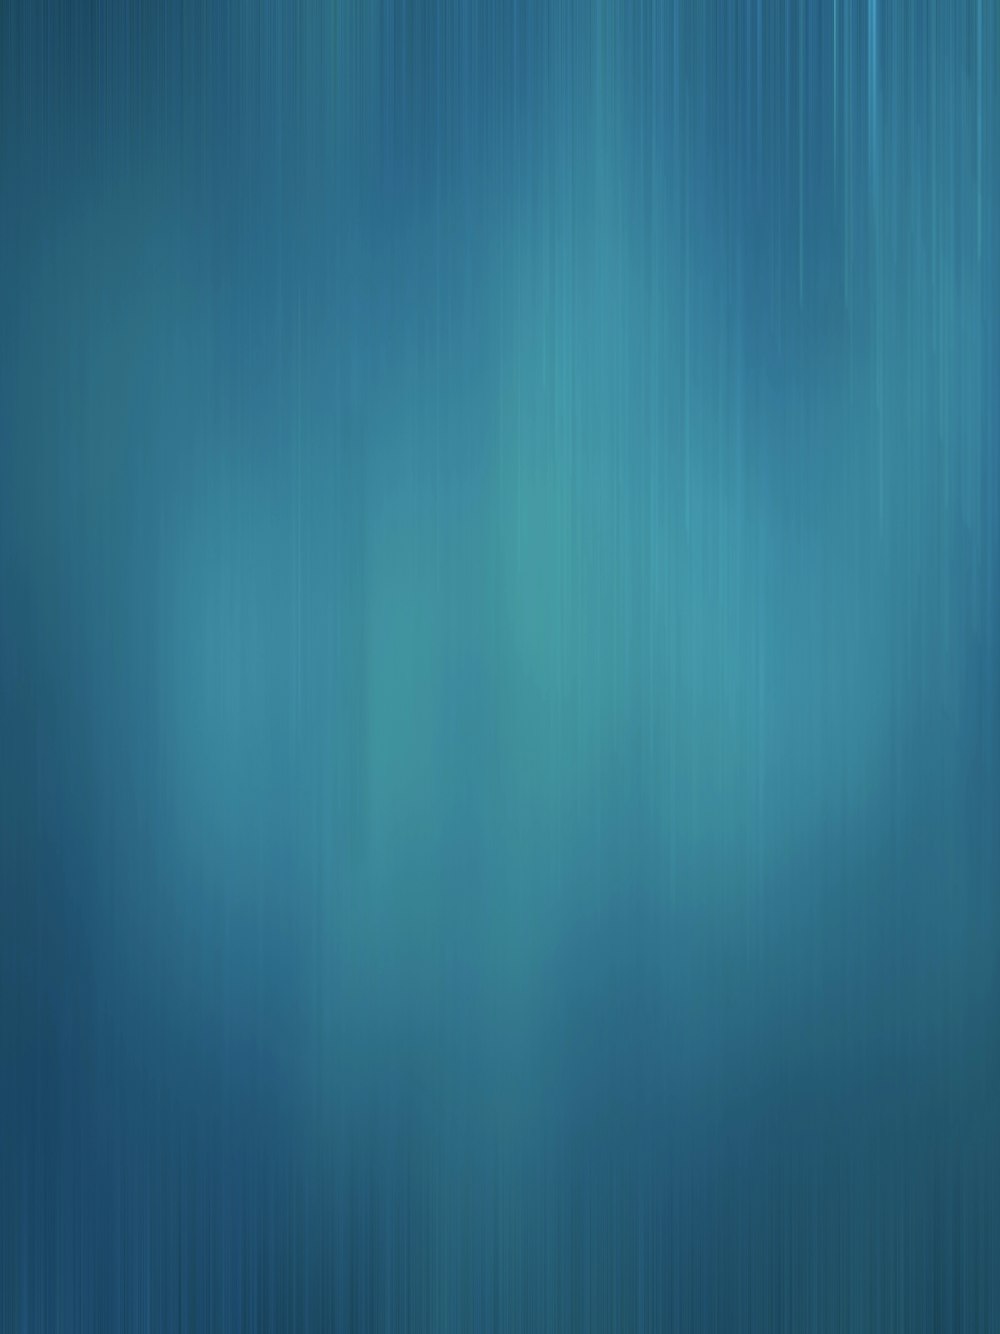 um fundo azul desfocado com linhas horizontais